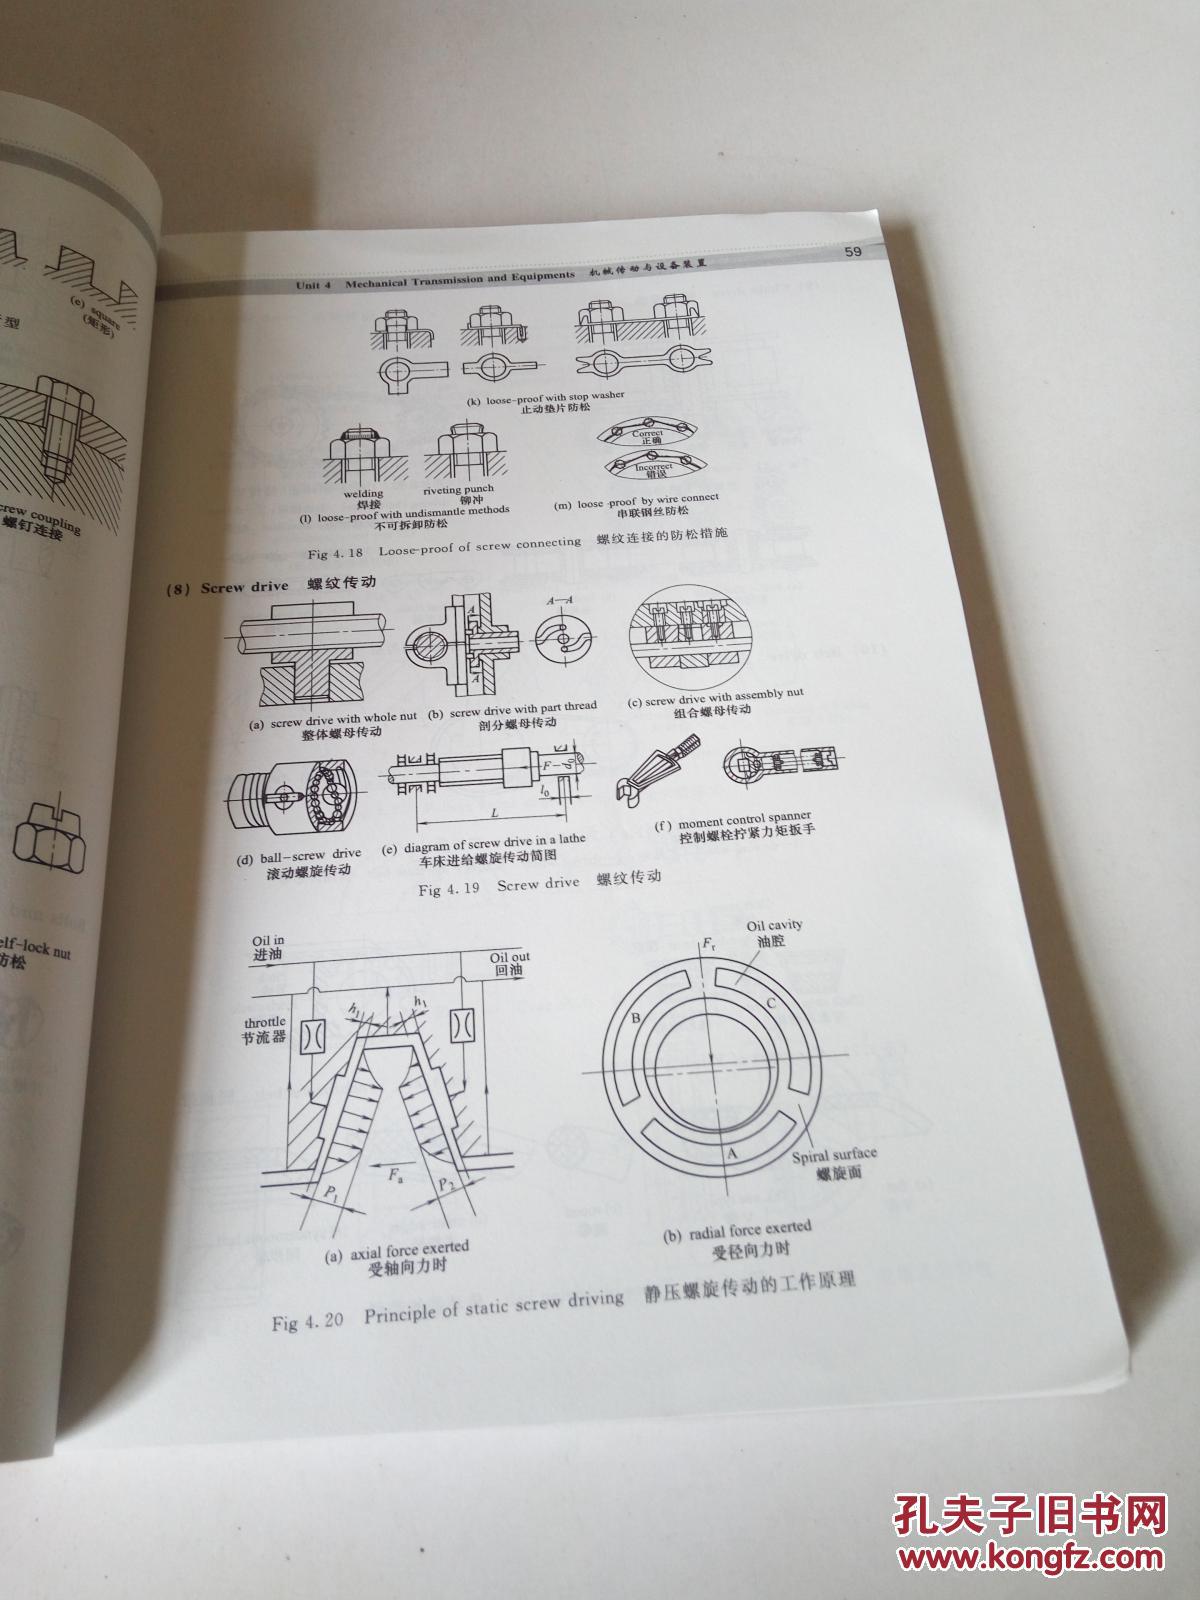 【图】图解机械制造专业英语_化学工业出版社